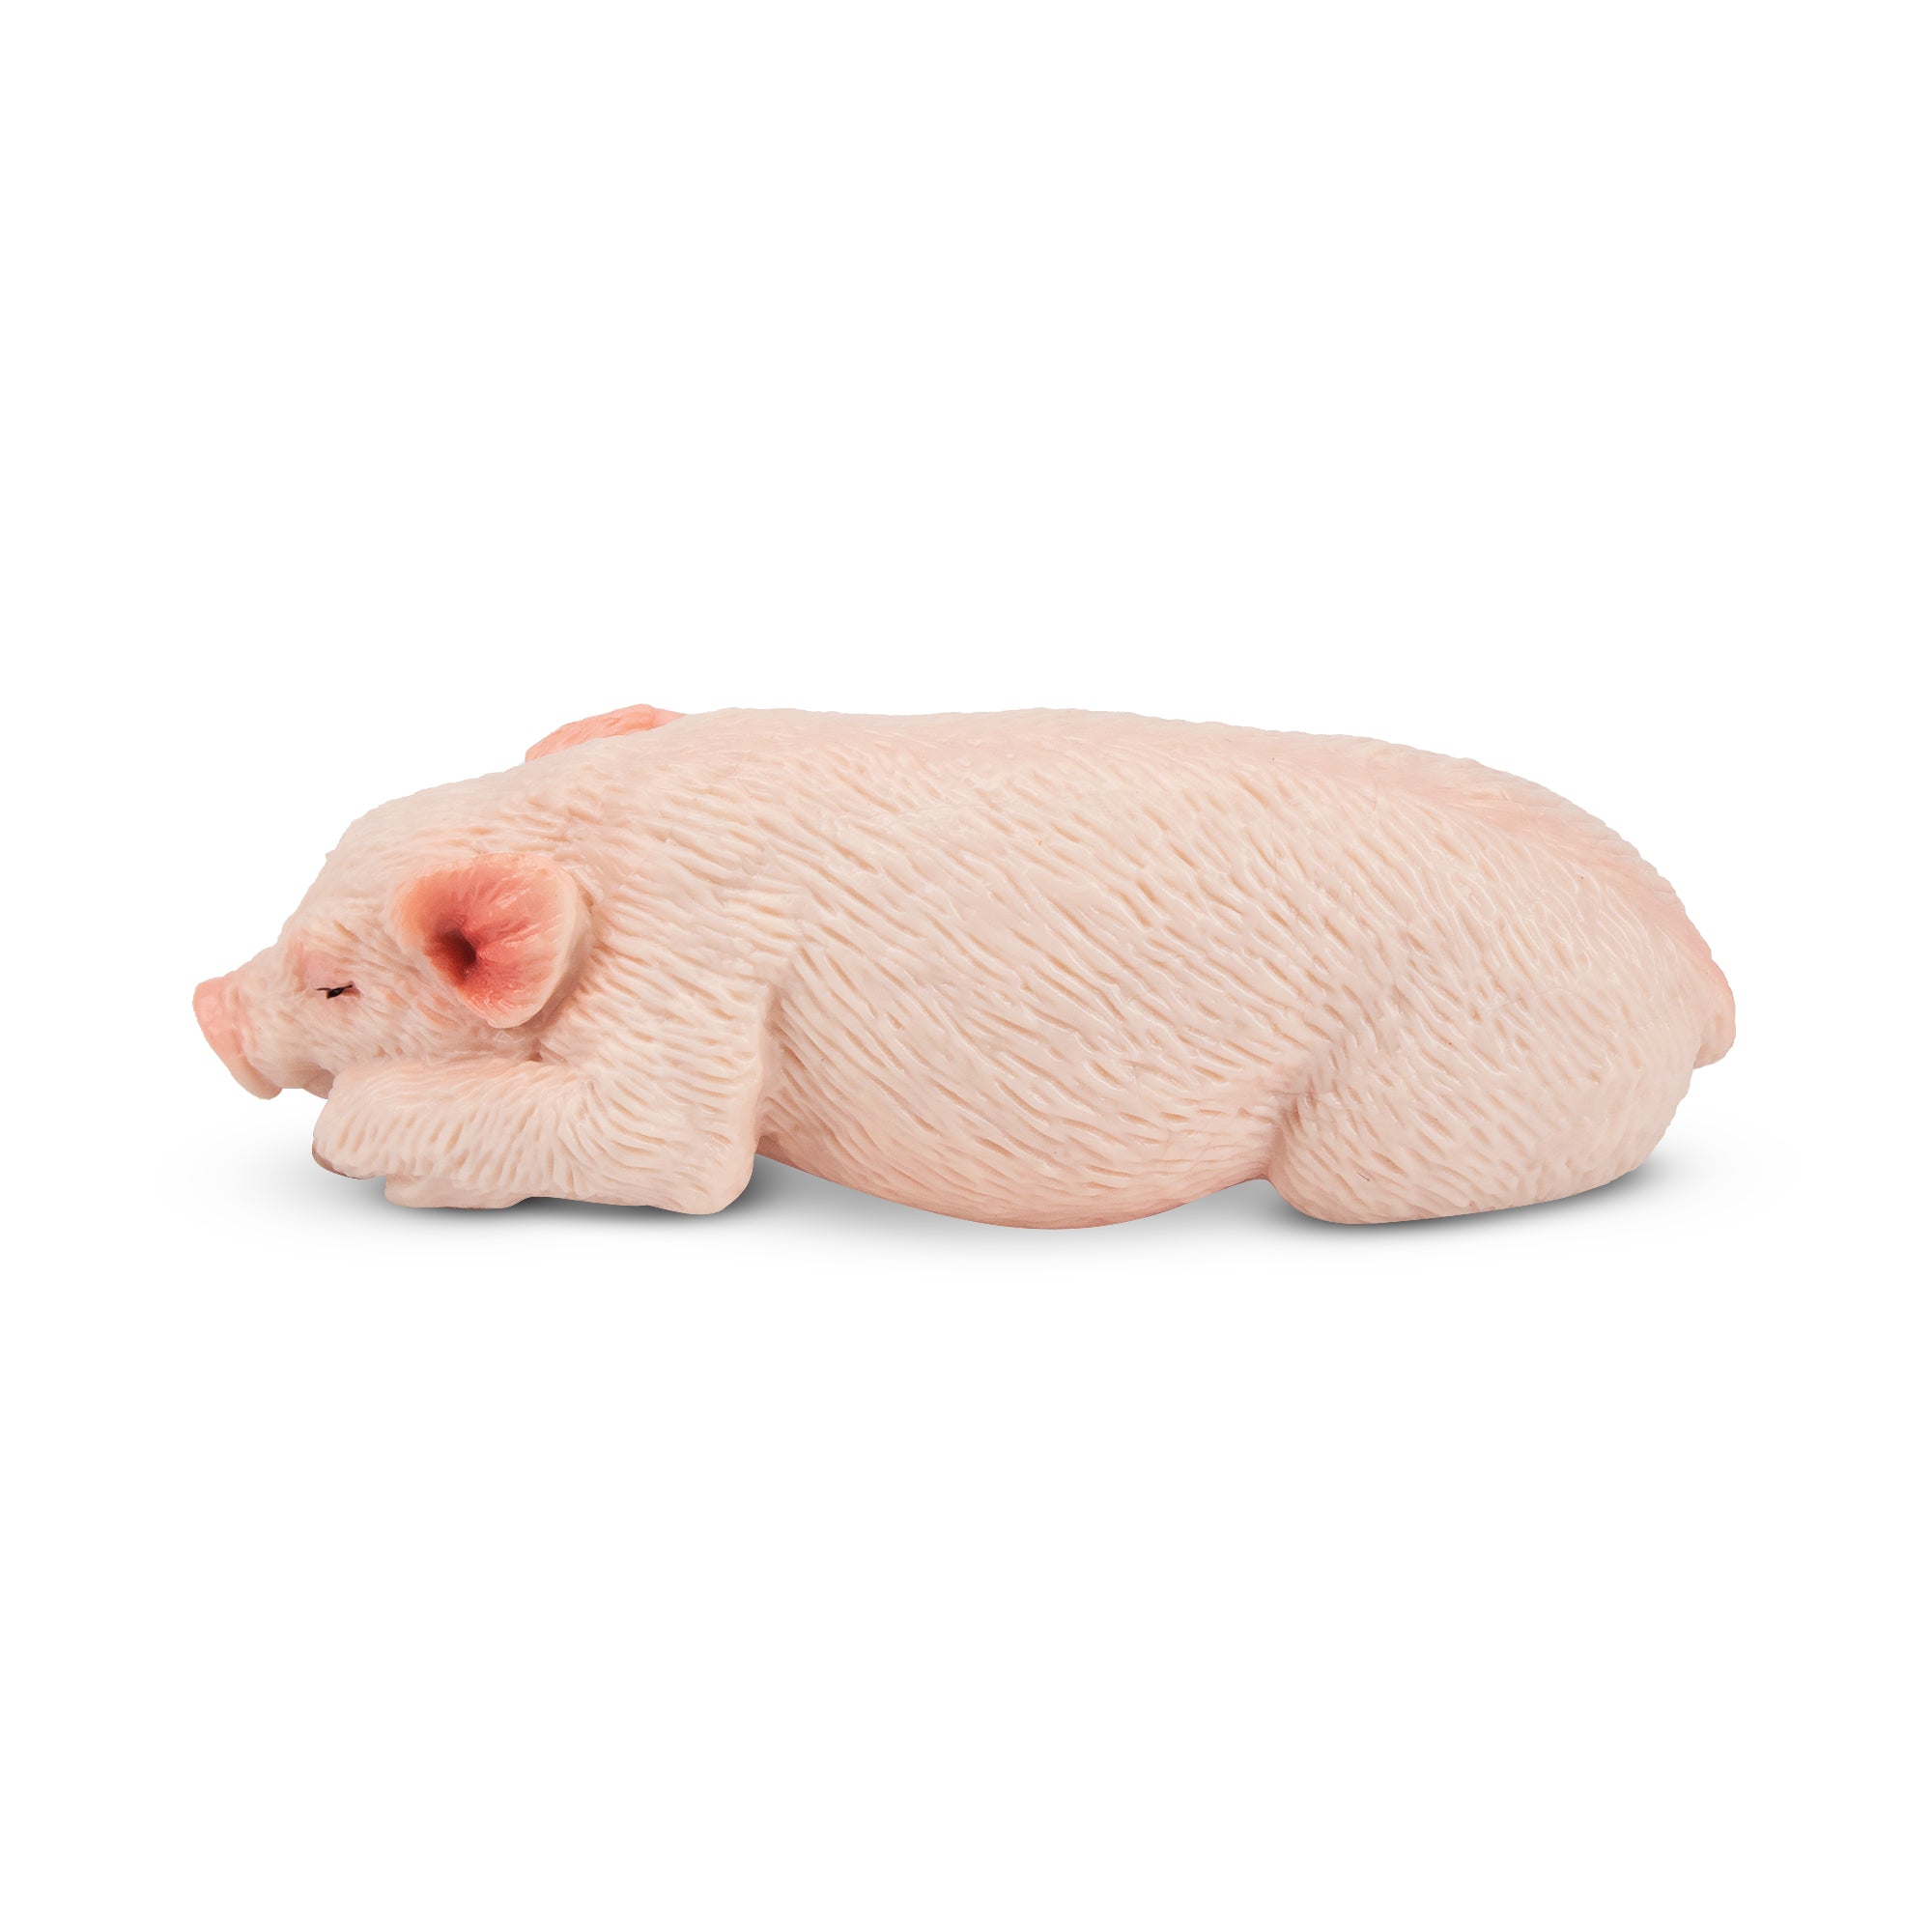 Toymany Sleeping Pink Piglet Figurine Toy-2